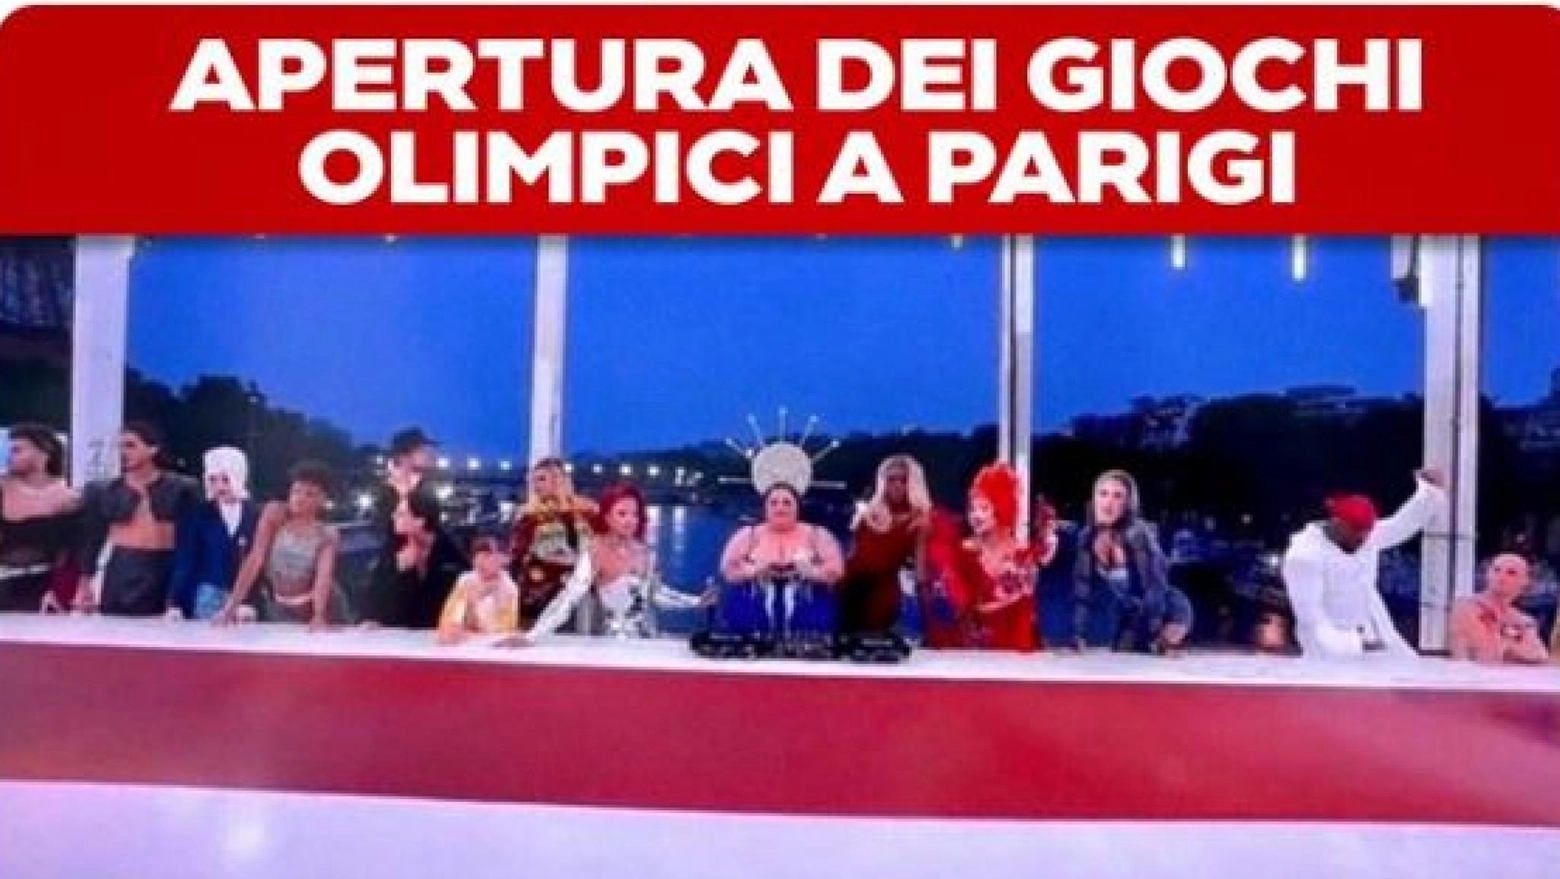 Olimpiadi Parigi 2024: un momento (contestato) della cerimonia d'apertura